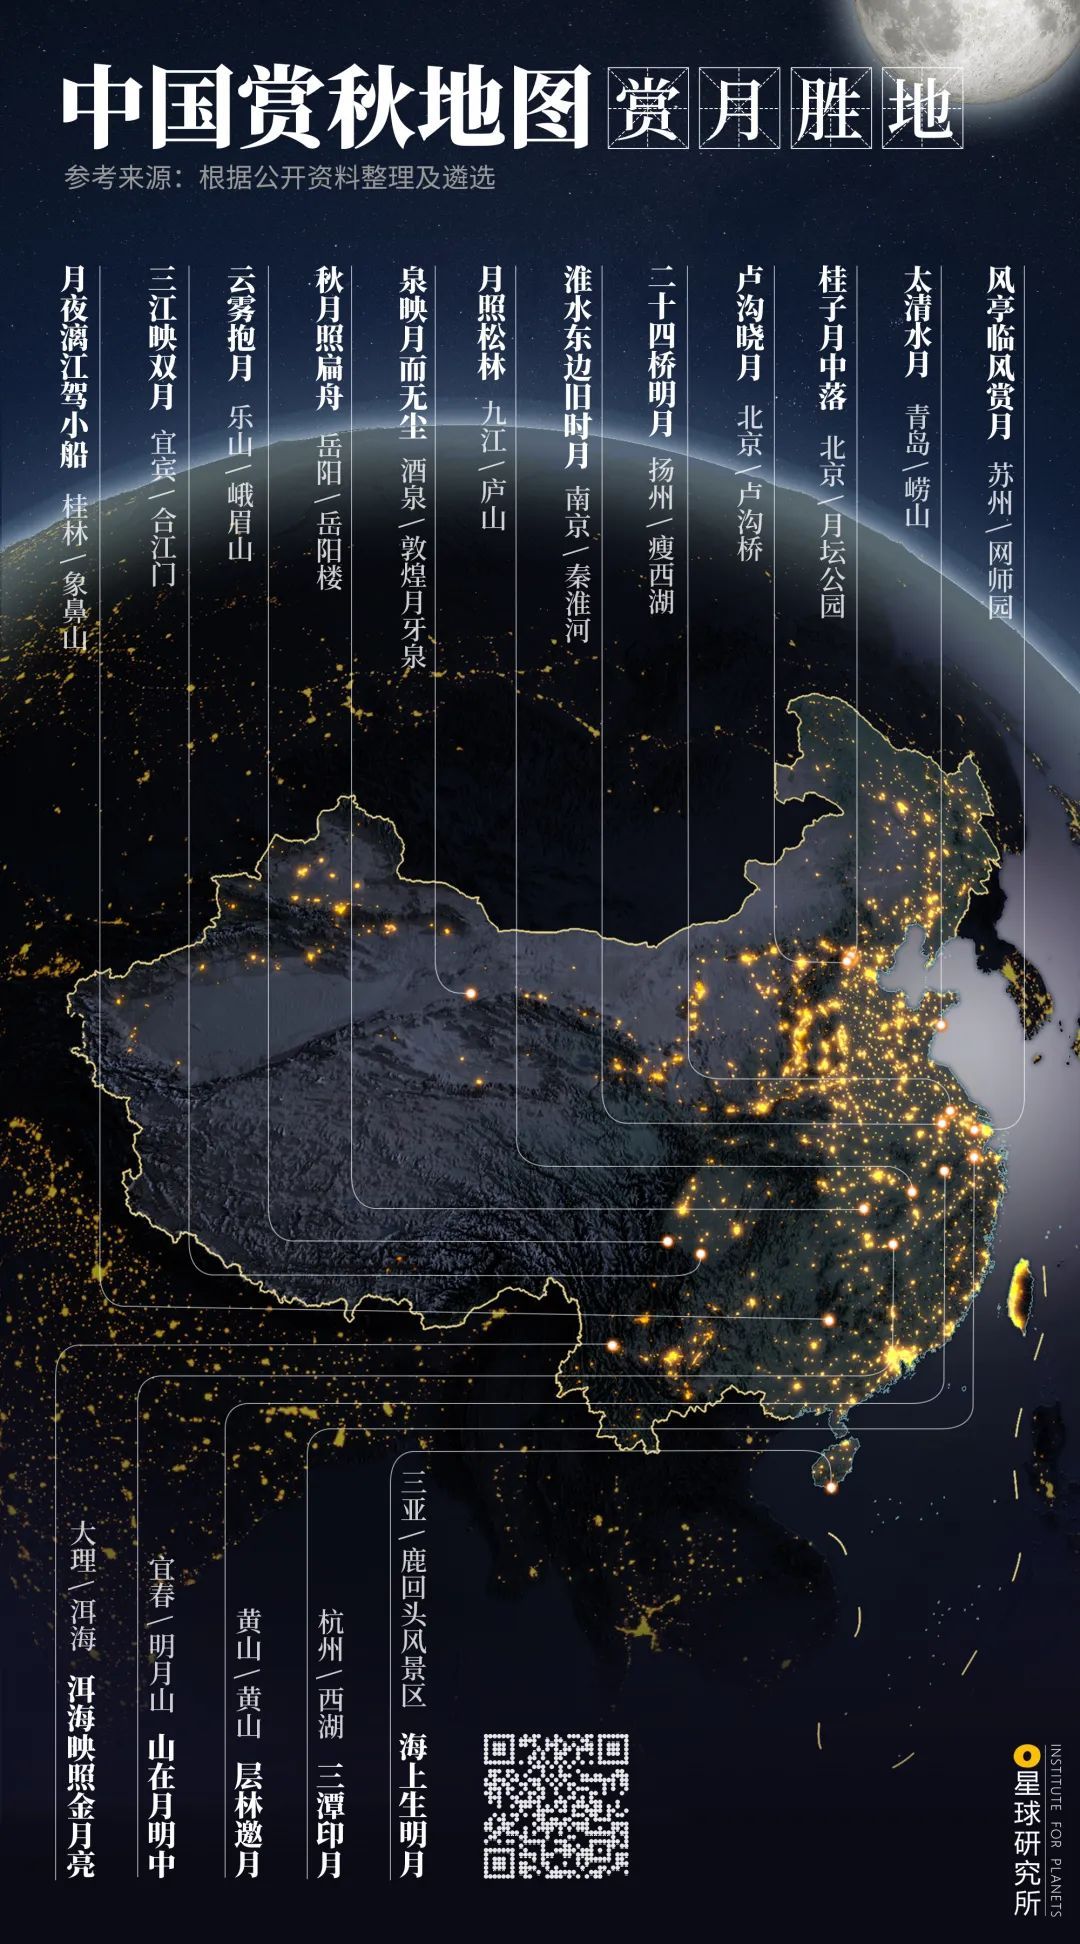 手机壁纸中国地图黑底图片